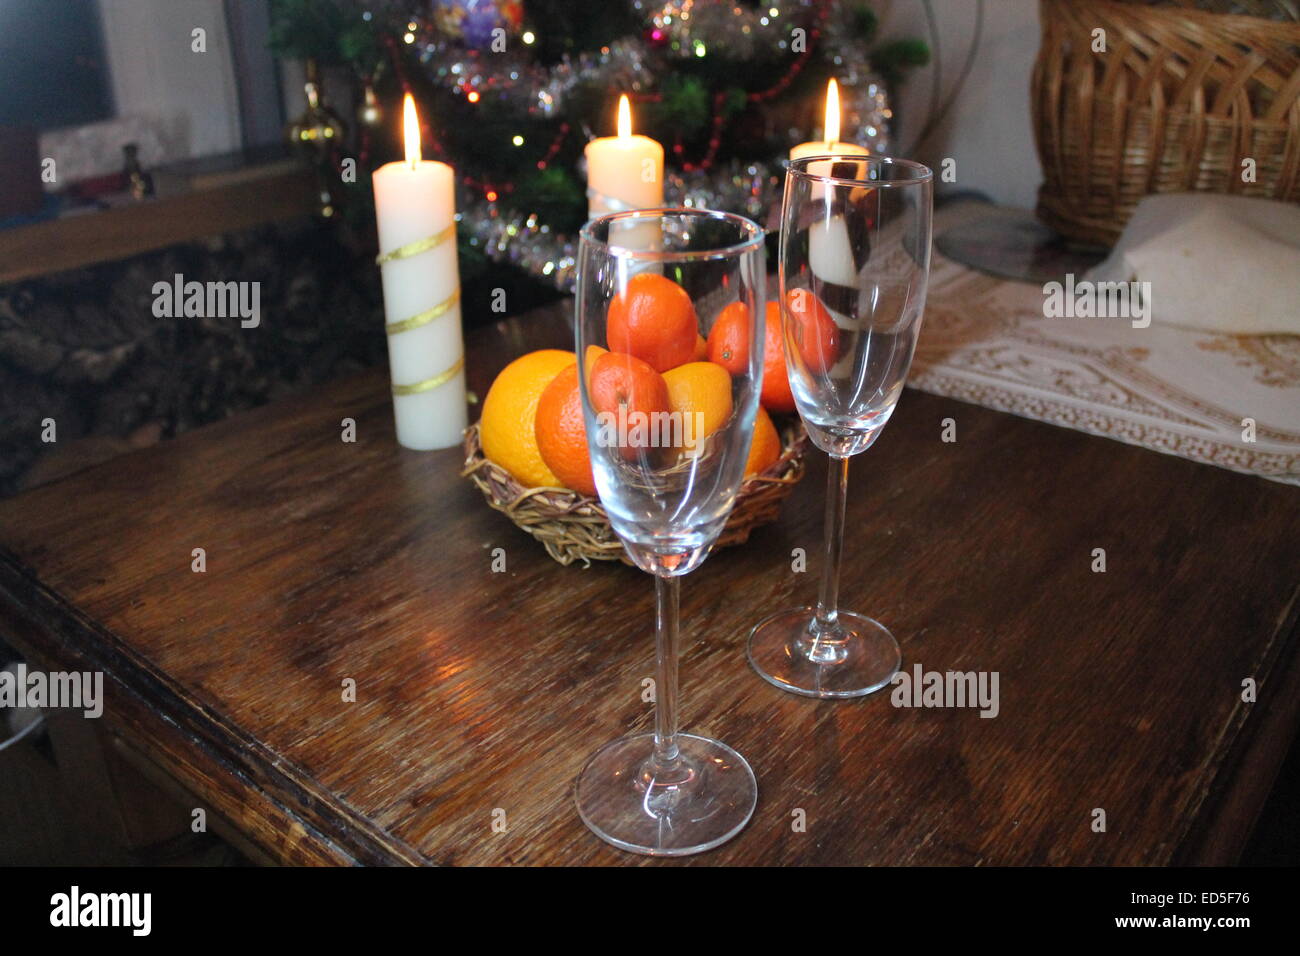 Due vetro cristallo sul tavolo , frutti maturi e la masterizzazione di tre candele bianche Foto Stock